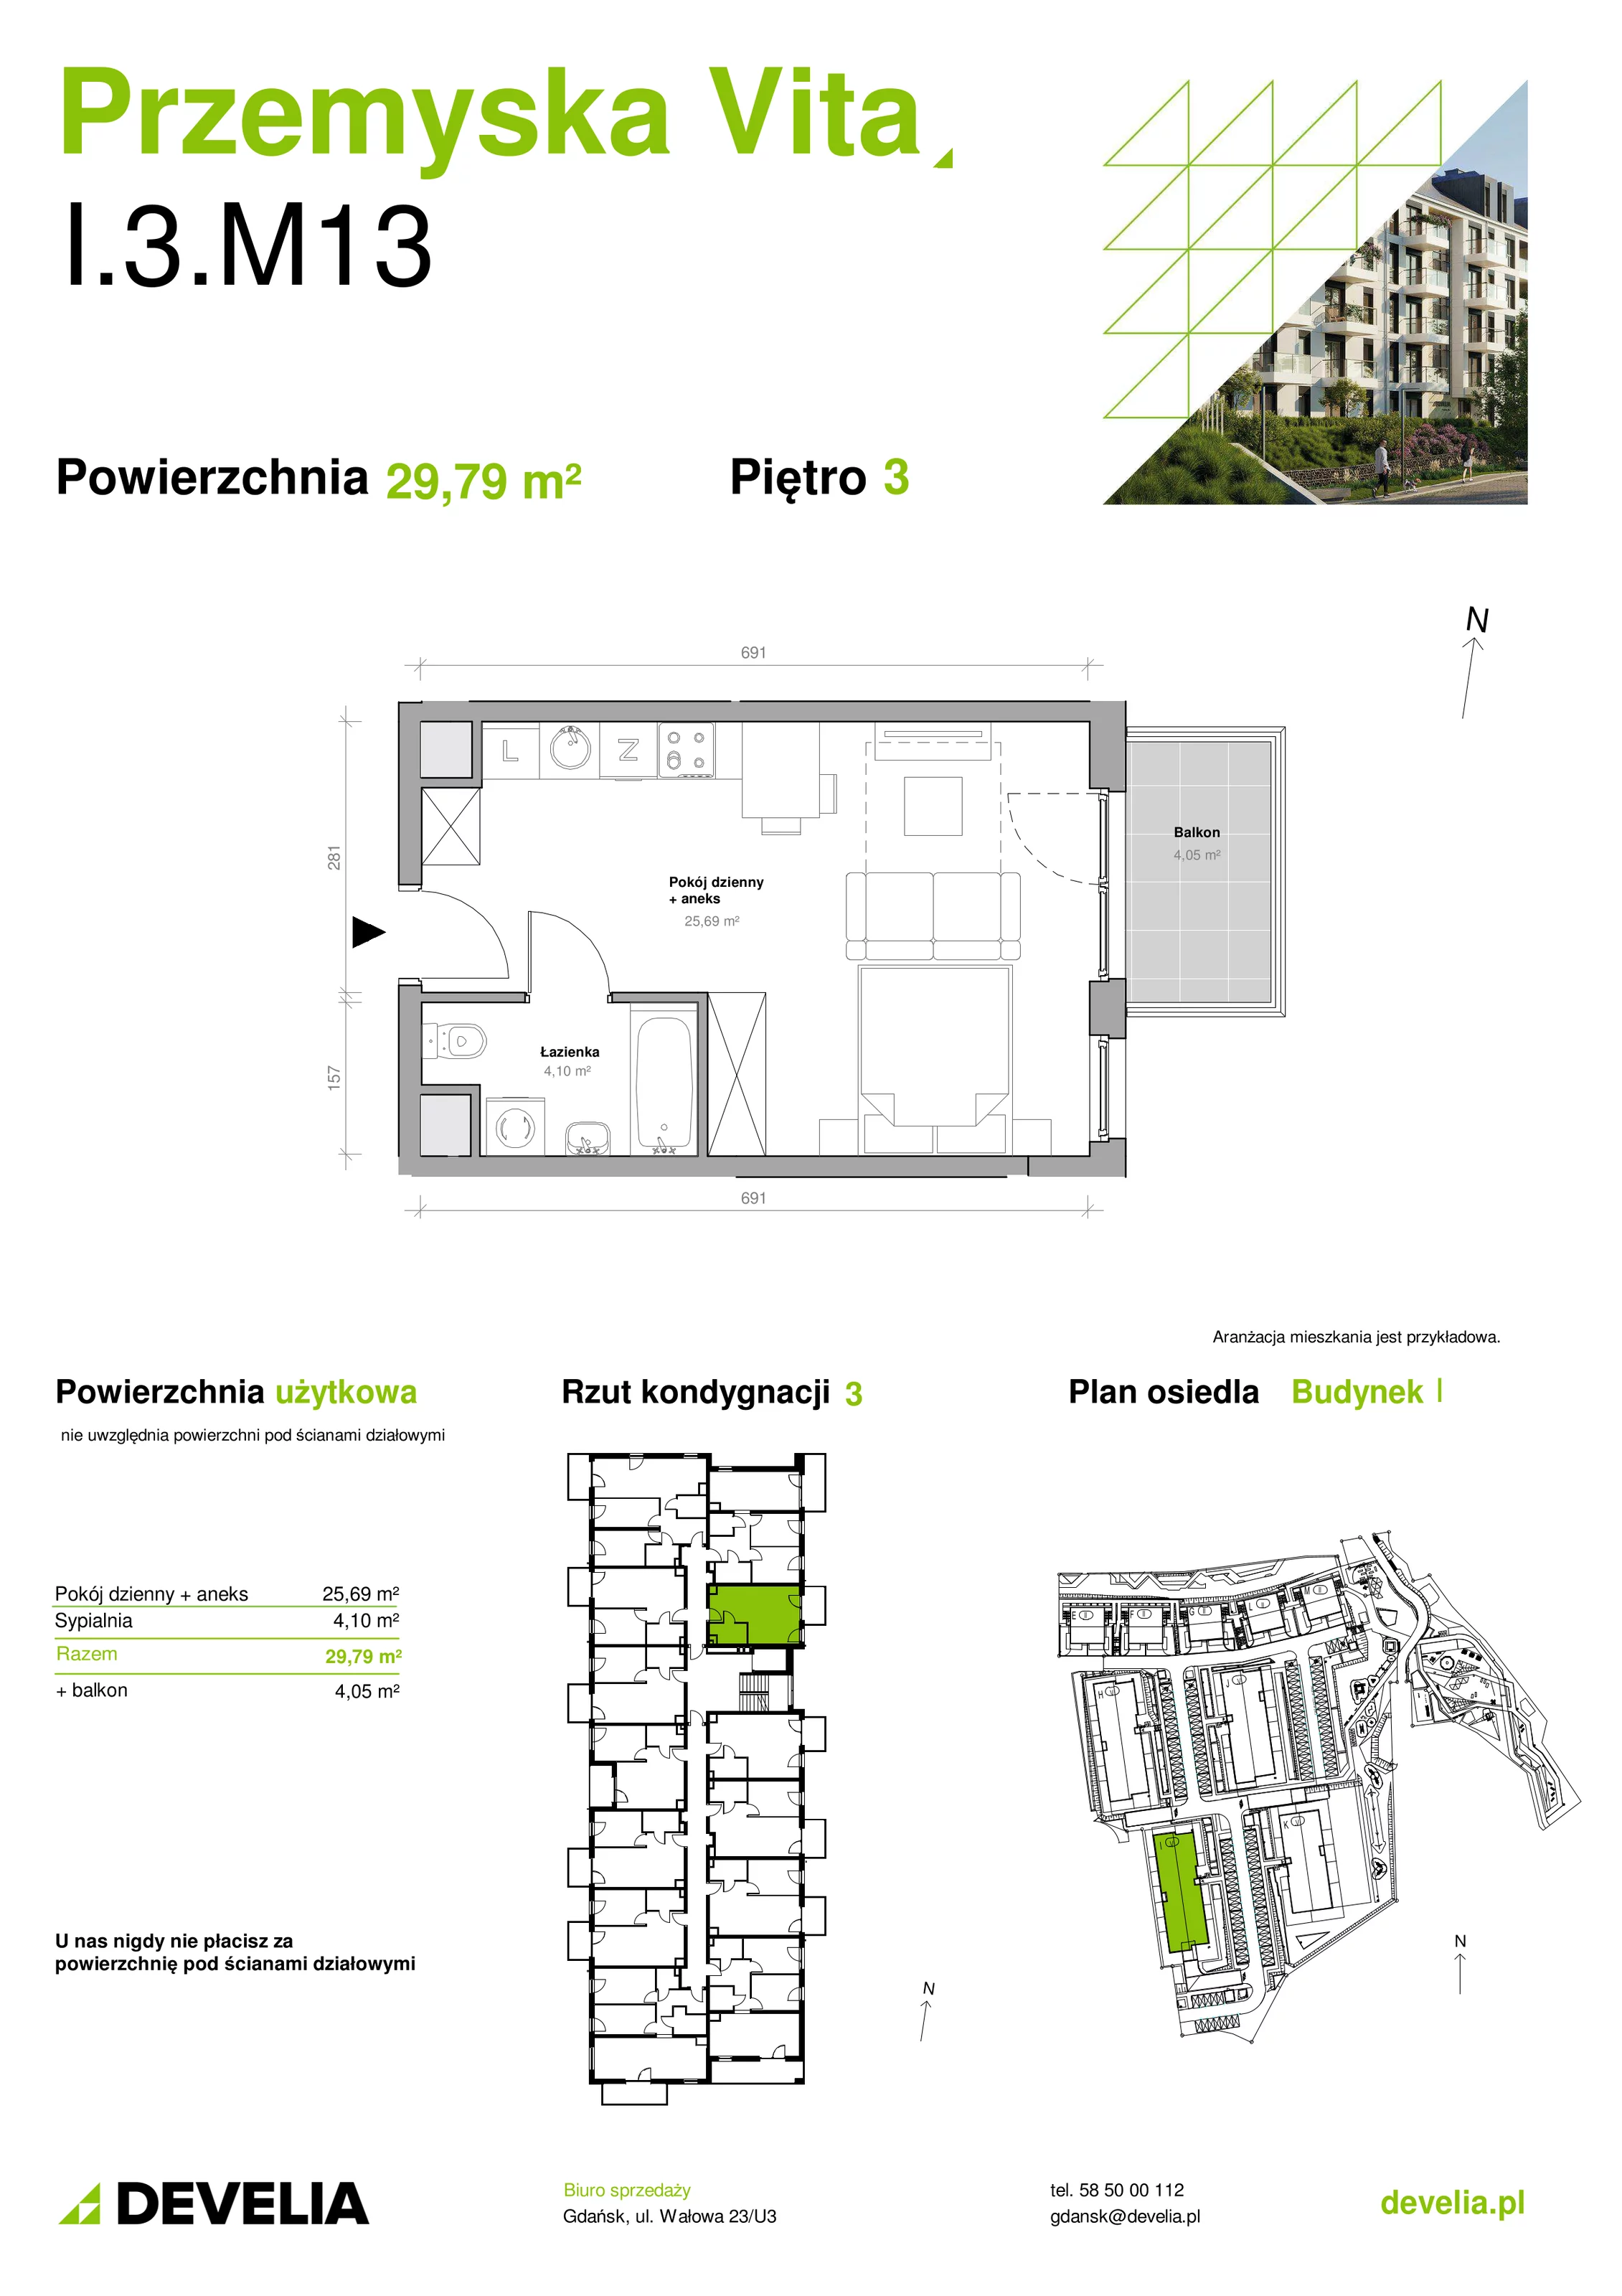 Mieszkanie 29,79 m², piętro 3, oferta nr I.3.M13, Przemyska Vita, Gdańsk, Ujeścisko-Łostowice, Ujeścisko, ul. Przemyska 37